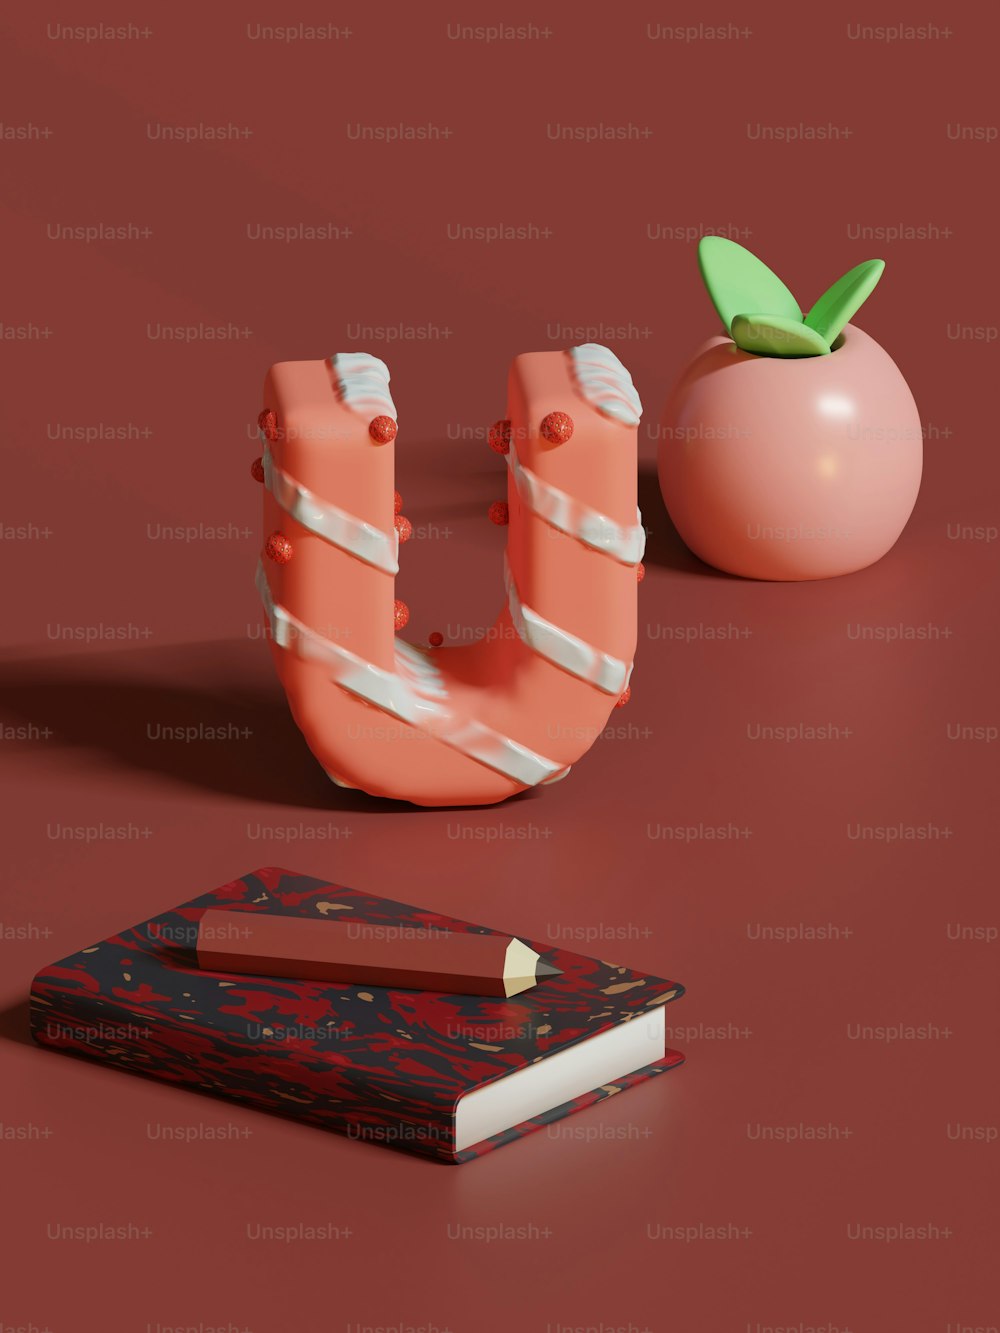 ein Buch, eine Tomate und eine Schere auf einer roten Oberfläche